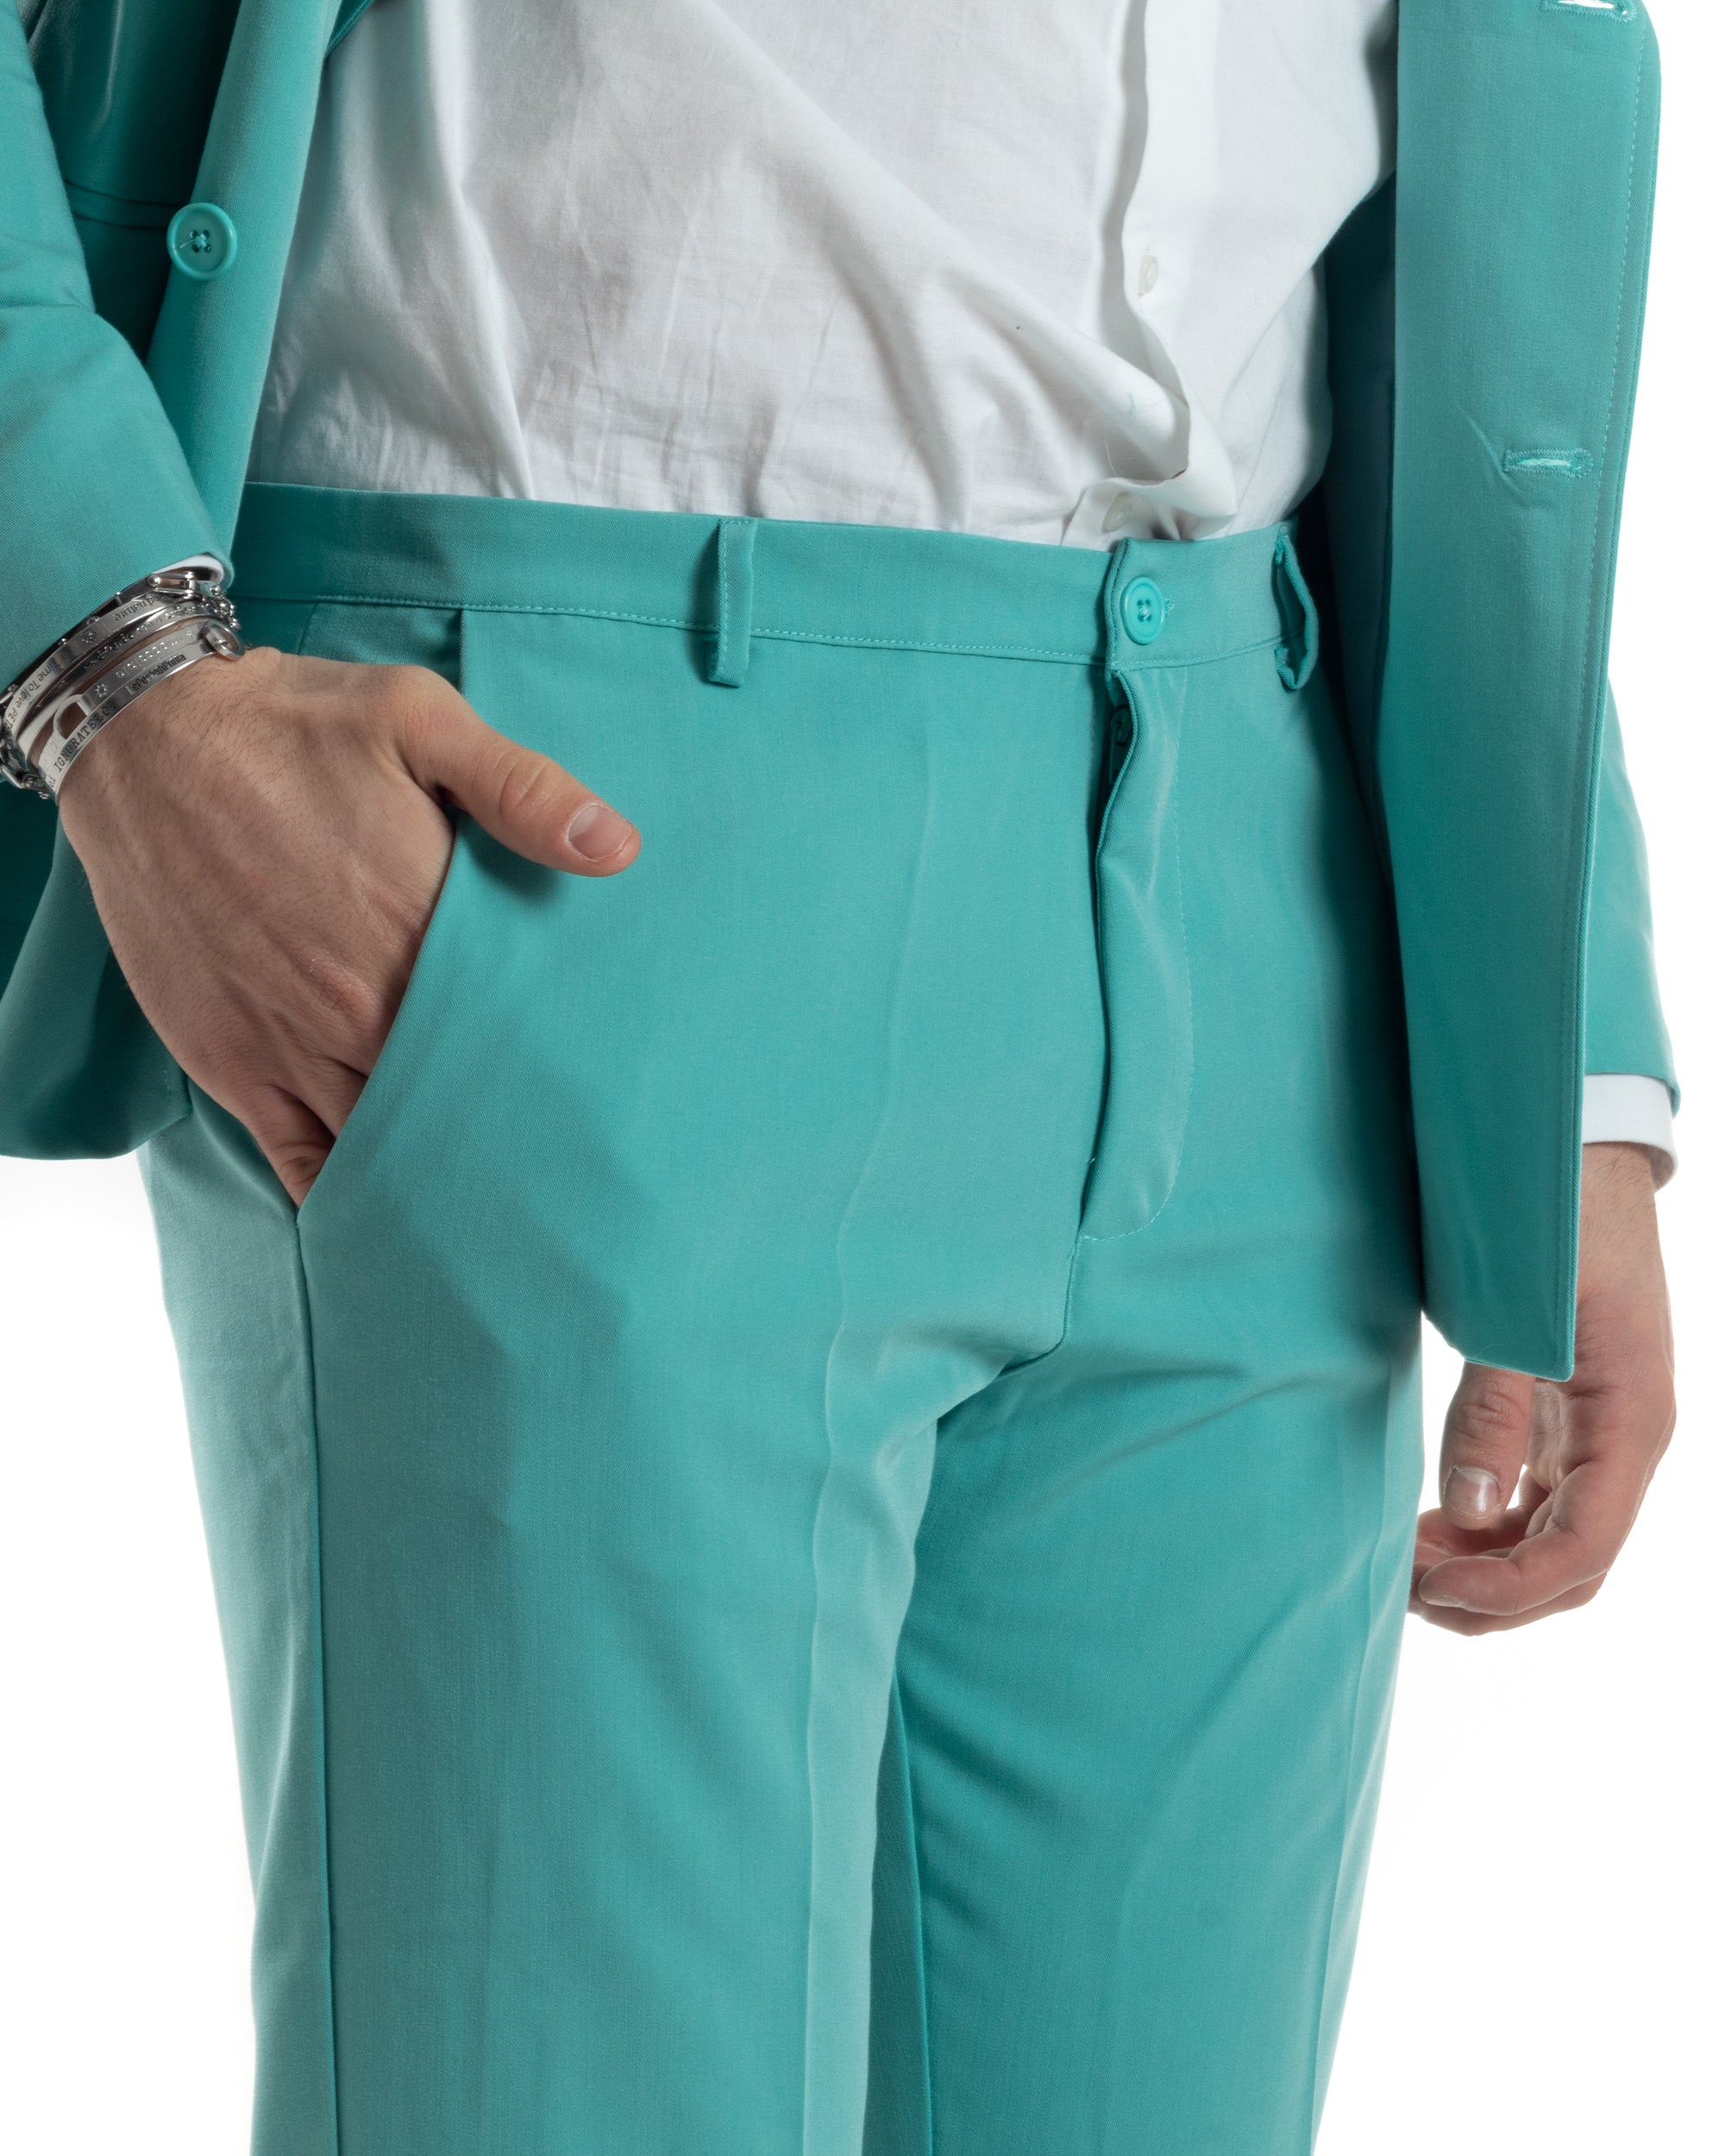 Abito Uomo Doppiopetto Vestito Completo Giacca Pantaloni Verde Acqua Tinta Unita Elegante Casual GIOSAL-AE1040A